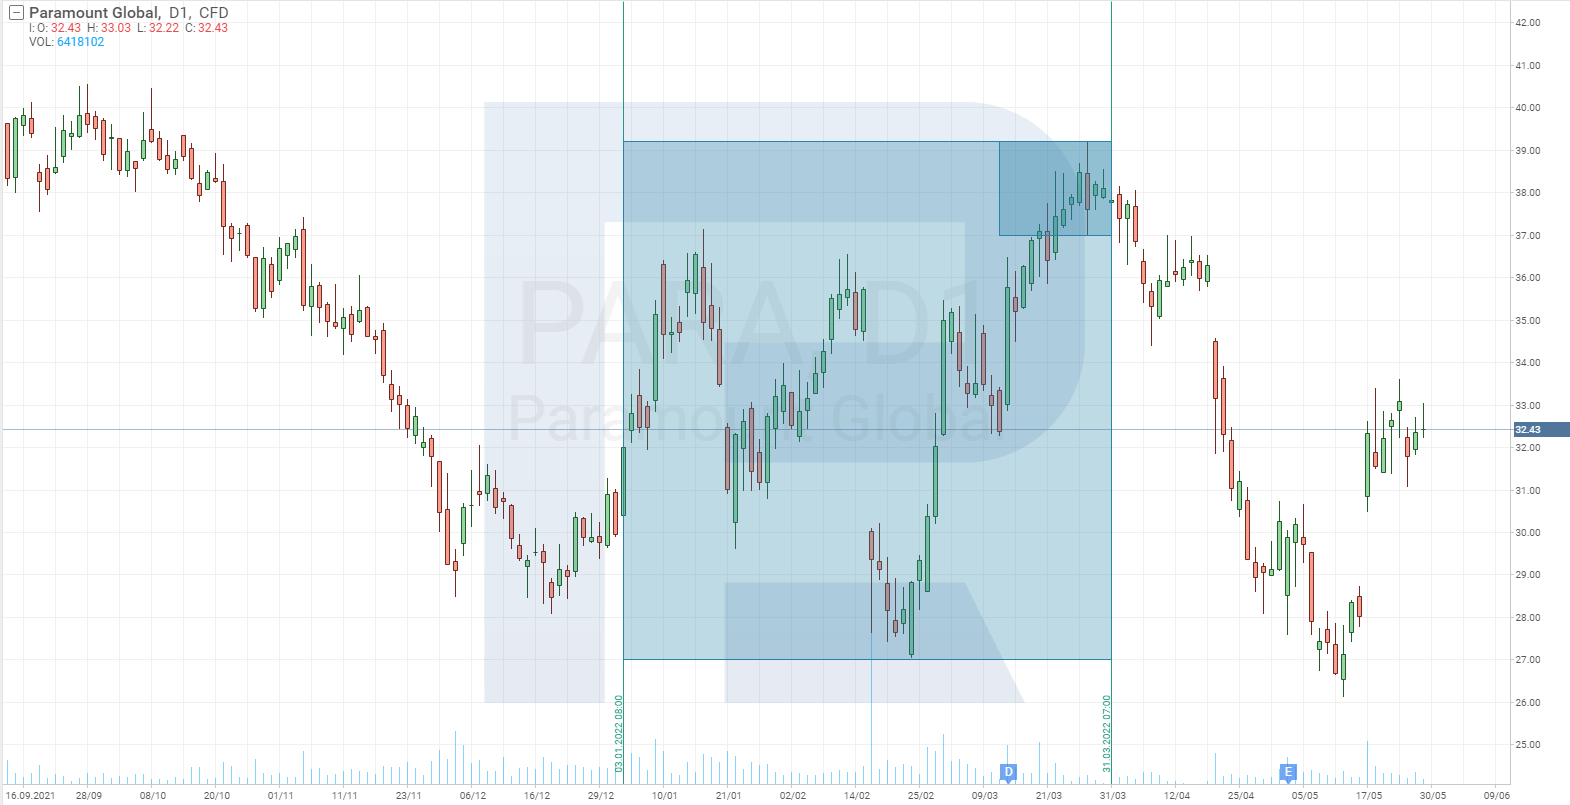 Gráfico del precio de las acciones de Paramount Global